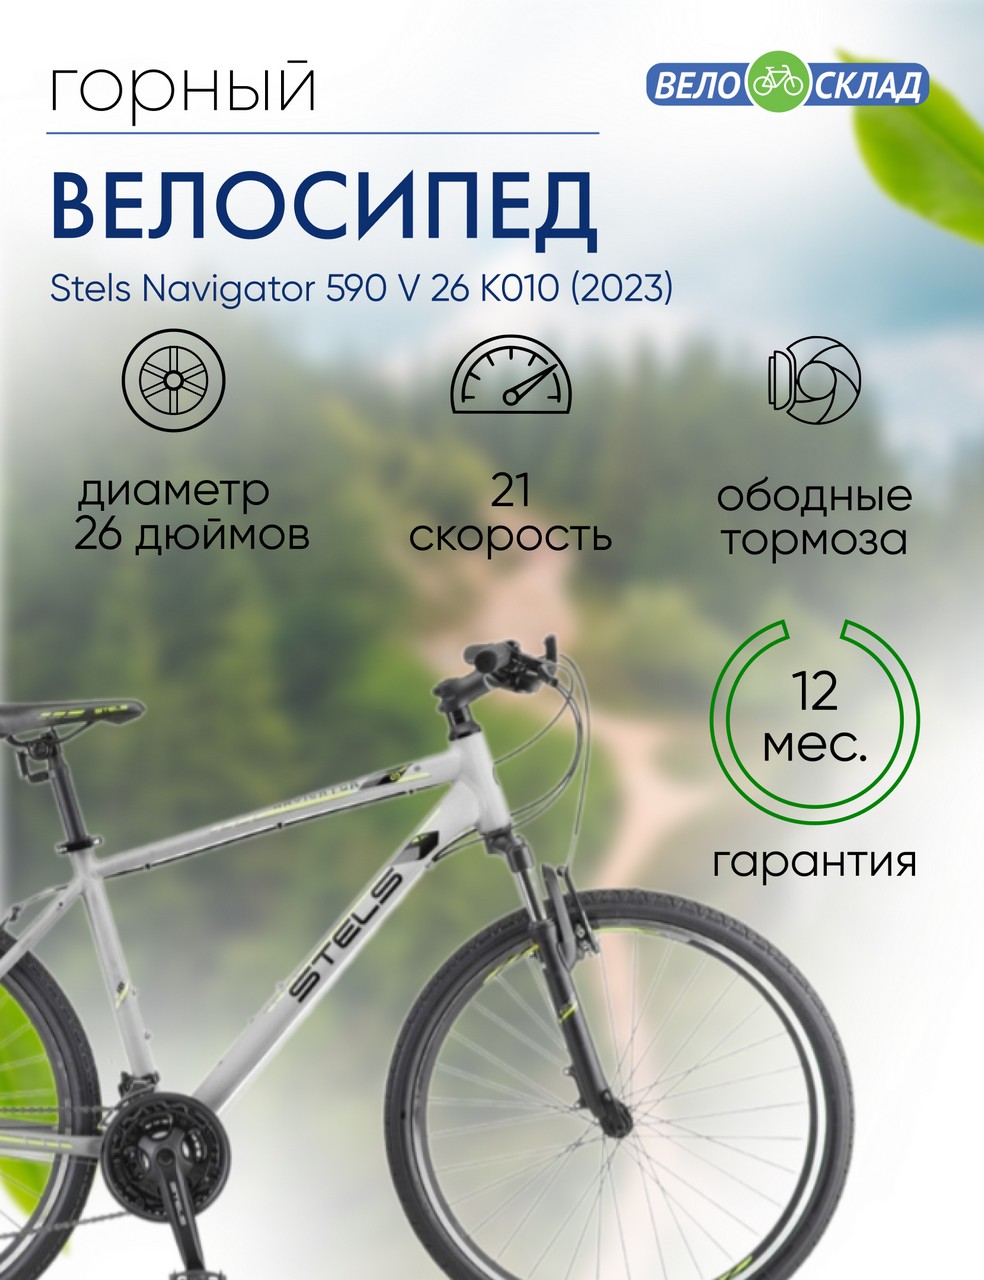 Горный велосипед Stels Navigator 590 V 26 K010, год 2023, цвет Серебристый-Зеленый, ростовка 18